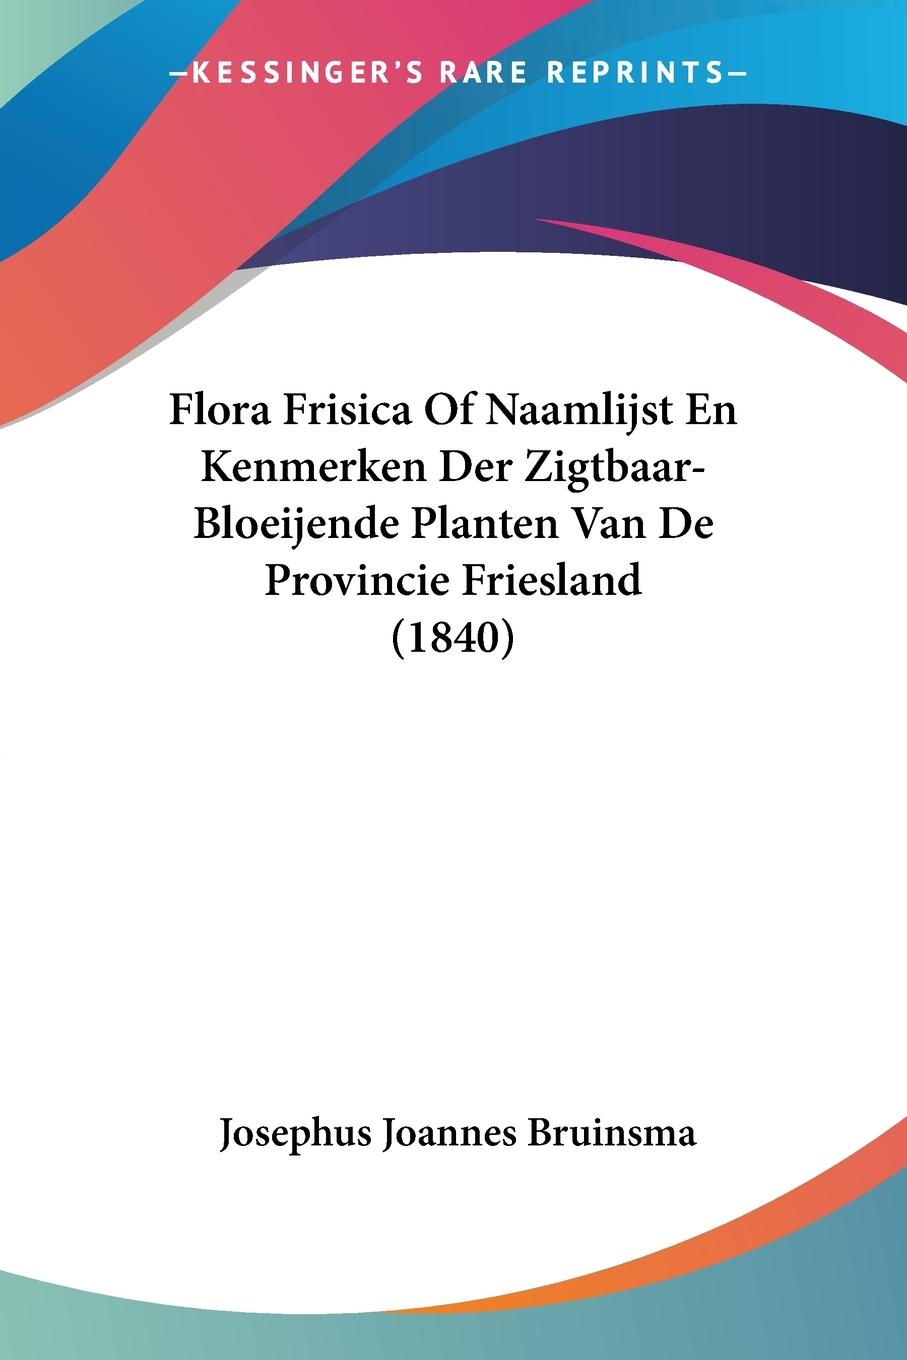 Flora Frisica Of Naamlijst En Kenmerken Der Zigtbaar-Bloeijende Planten Van De Provincie Friesland (1840) - Bruinsma, Josephus Joannes